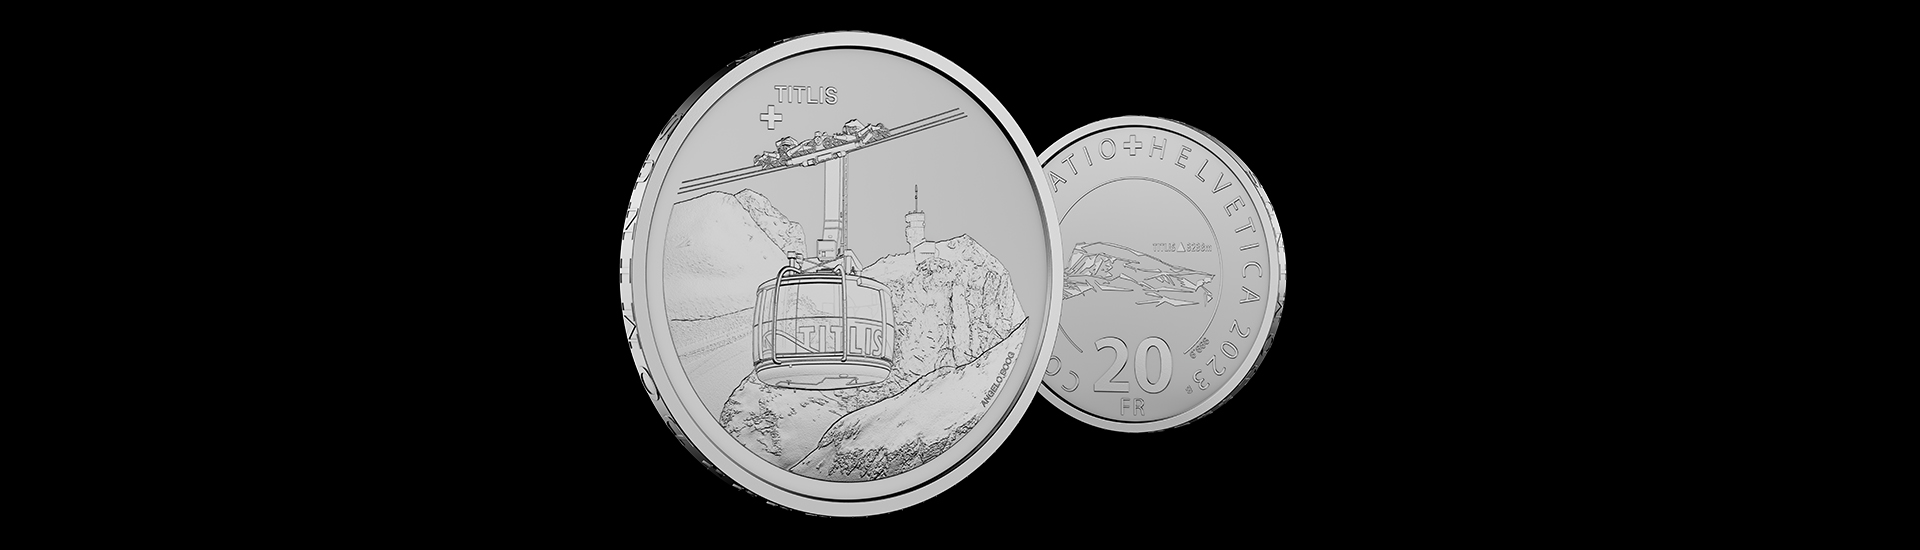 Moneta d’argento «Cabinovia Titlis»